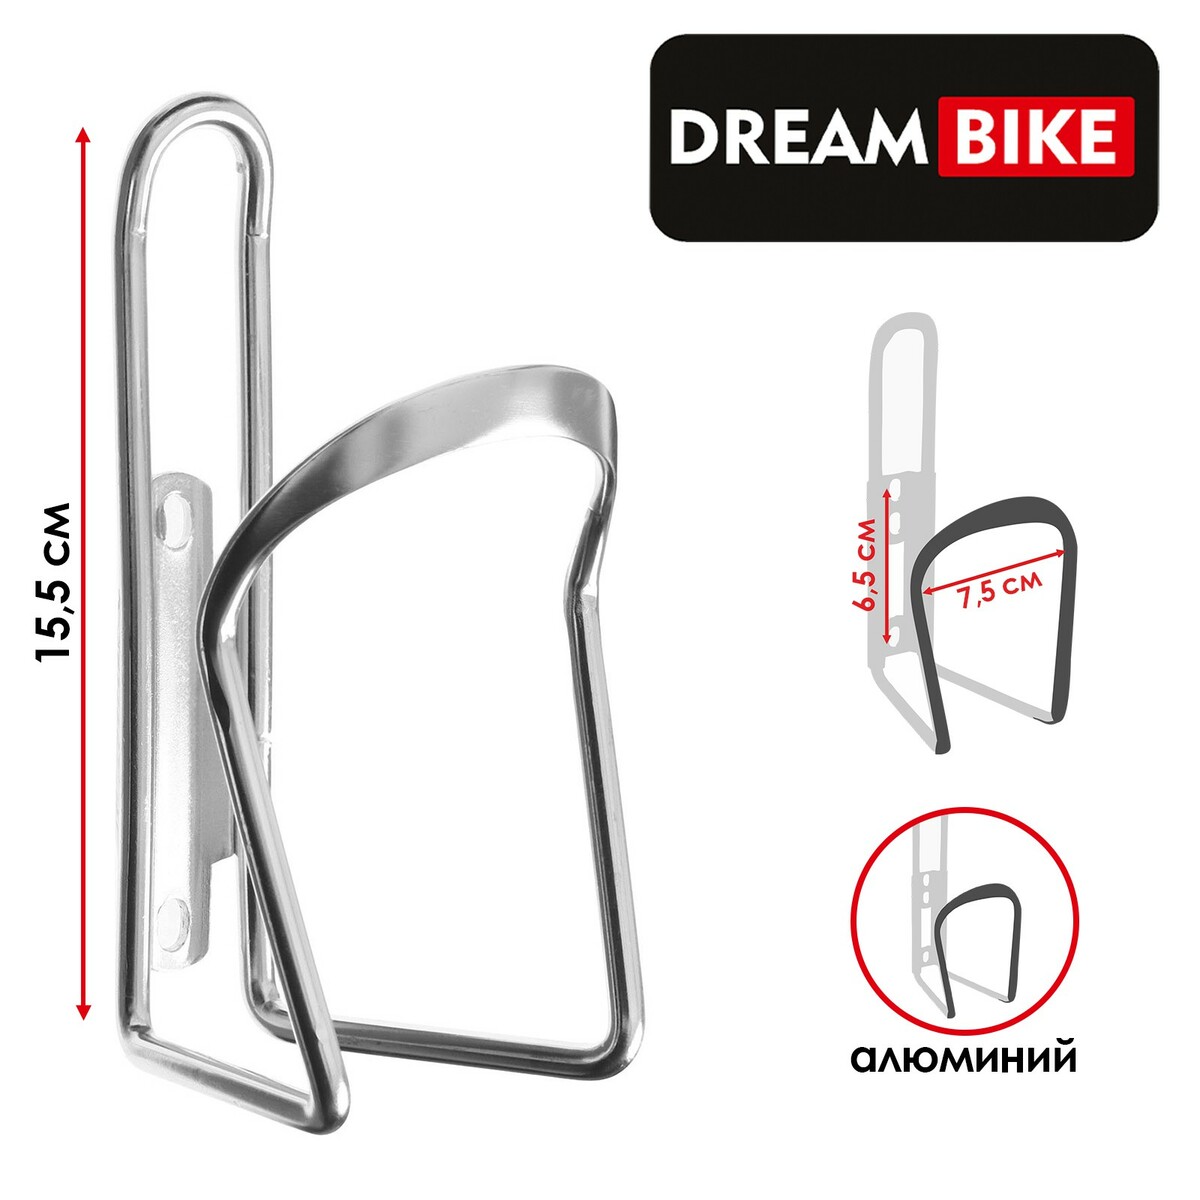 Флягодержатель dream bike, алюминиевый, цвет серый, без крепежных болтов флягодержатель dream bike алюминиевый серый без крепежных болтов